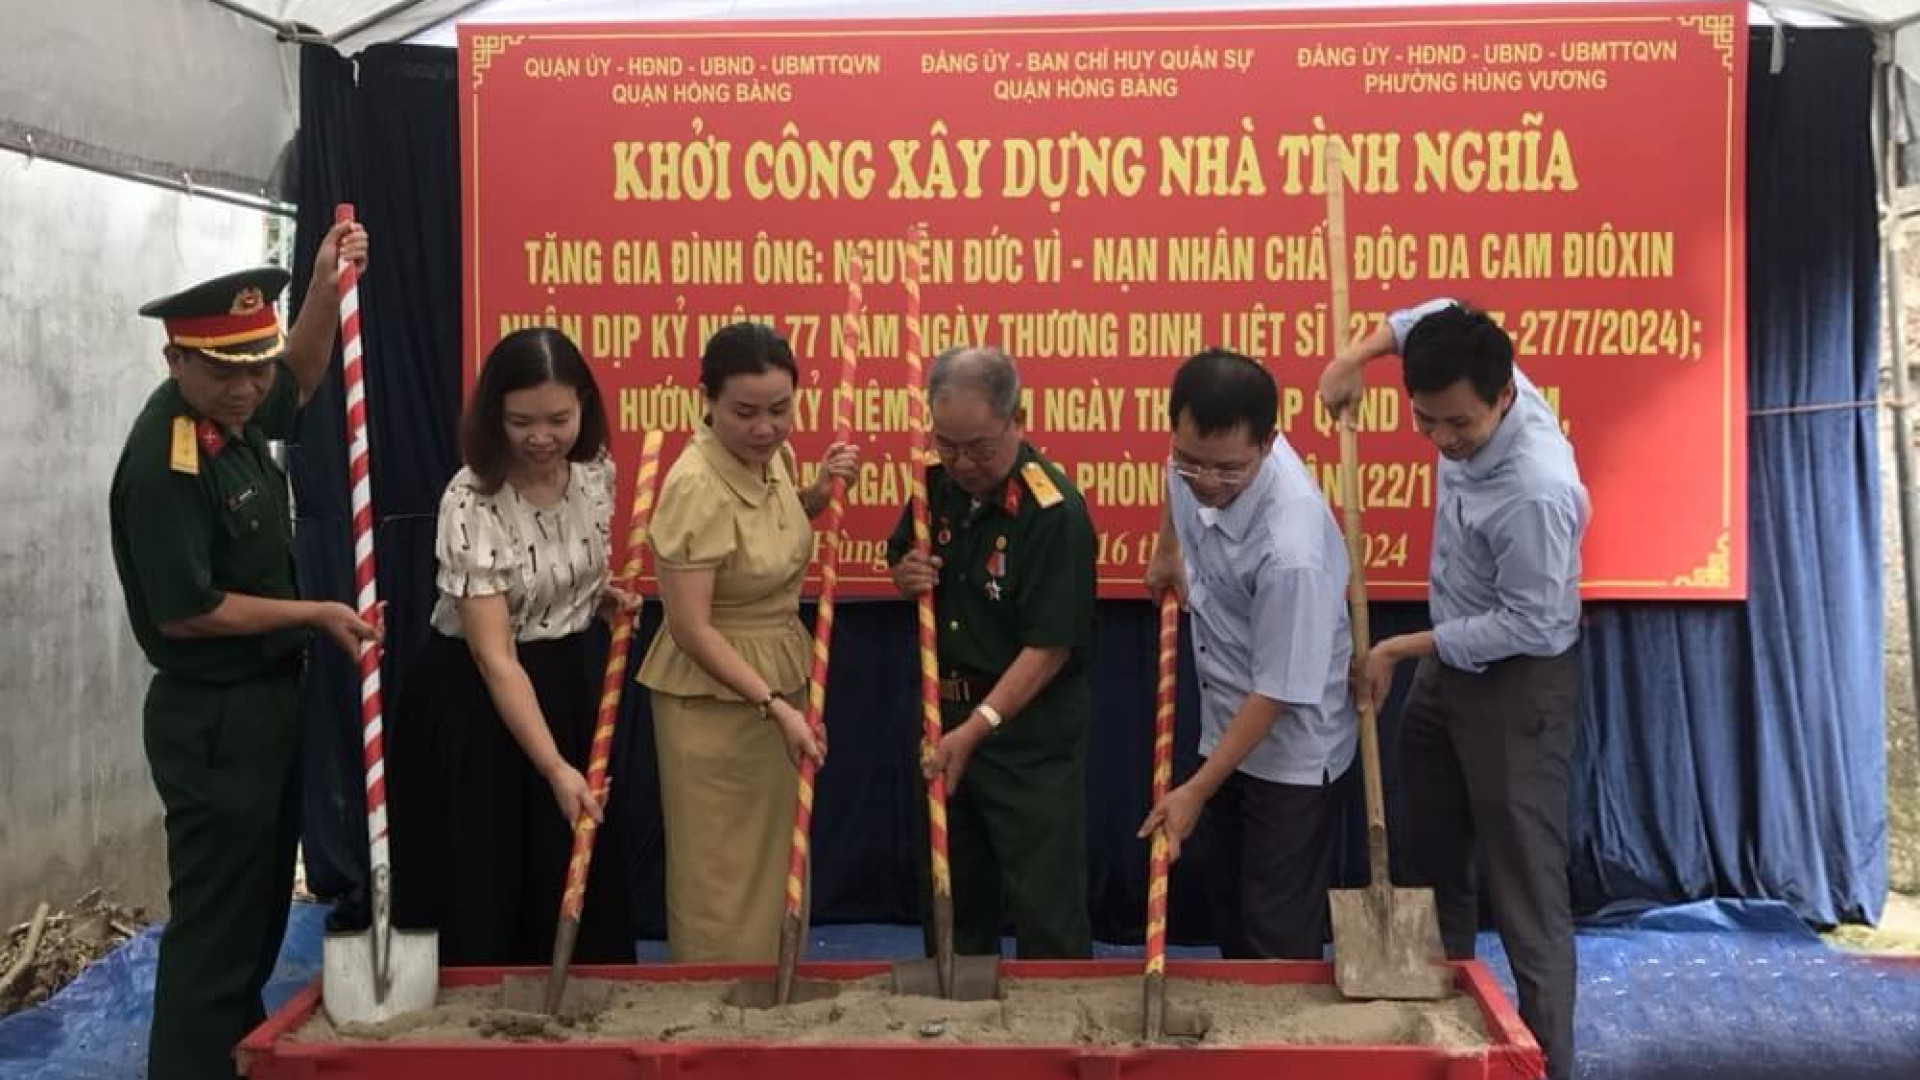 Ban CHQS quận Hồng Bàng phối hợp khởi công xây dựng “Nhà tình nghĩa”